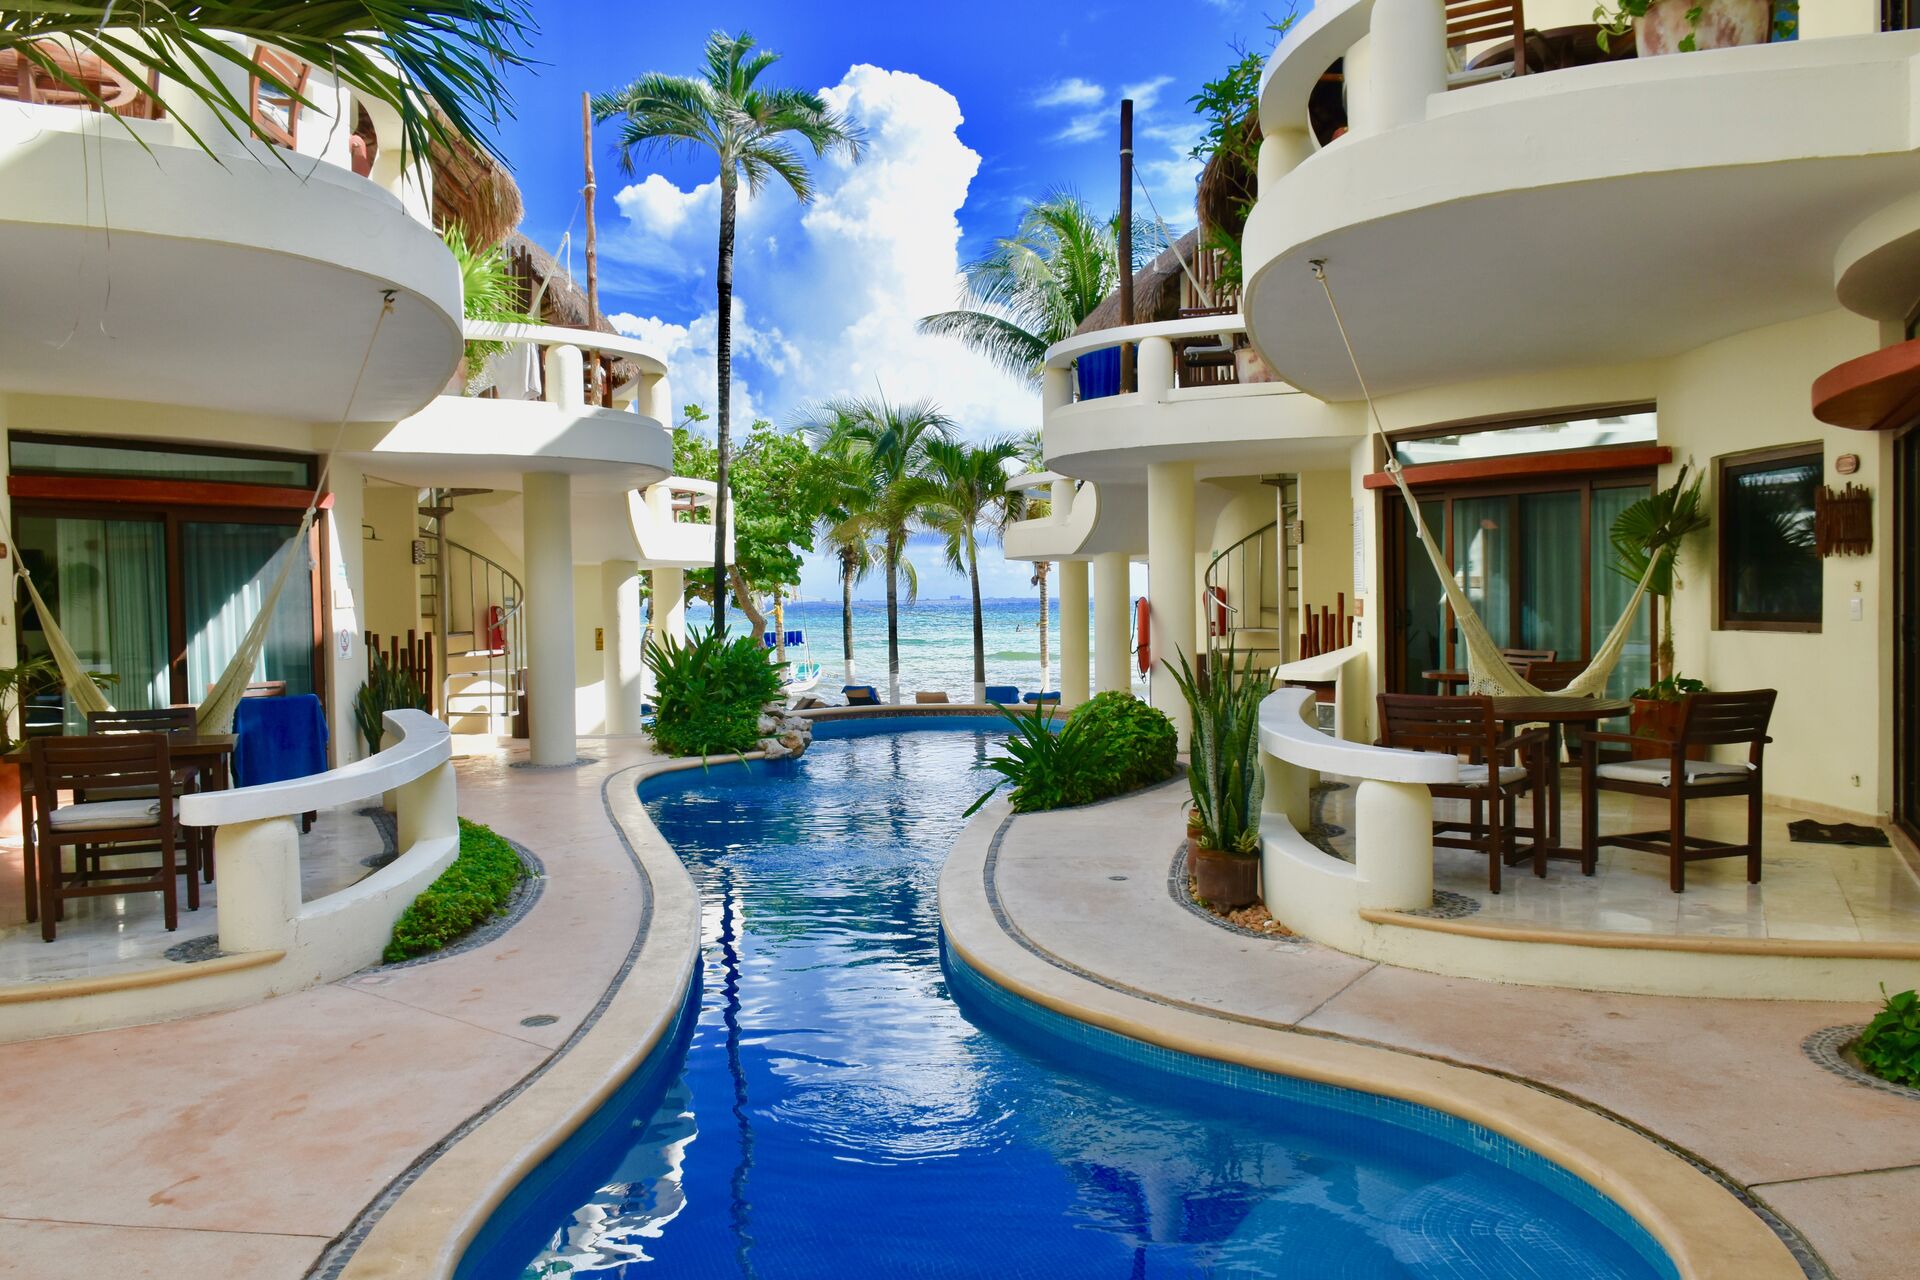 Beautiful hotel pool.